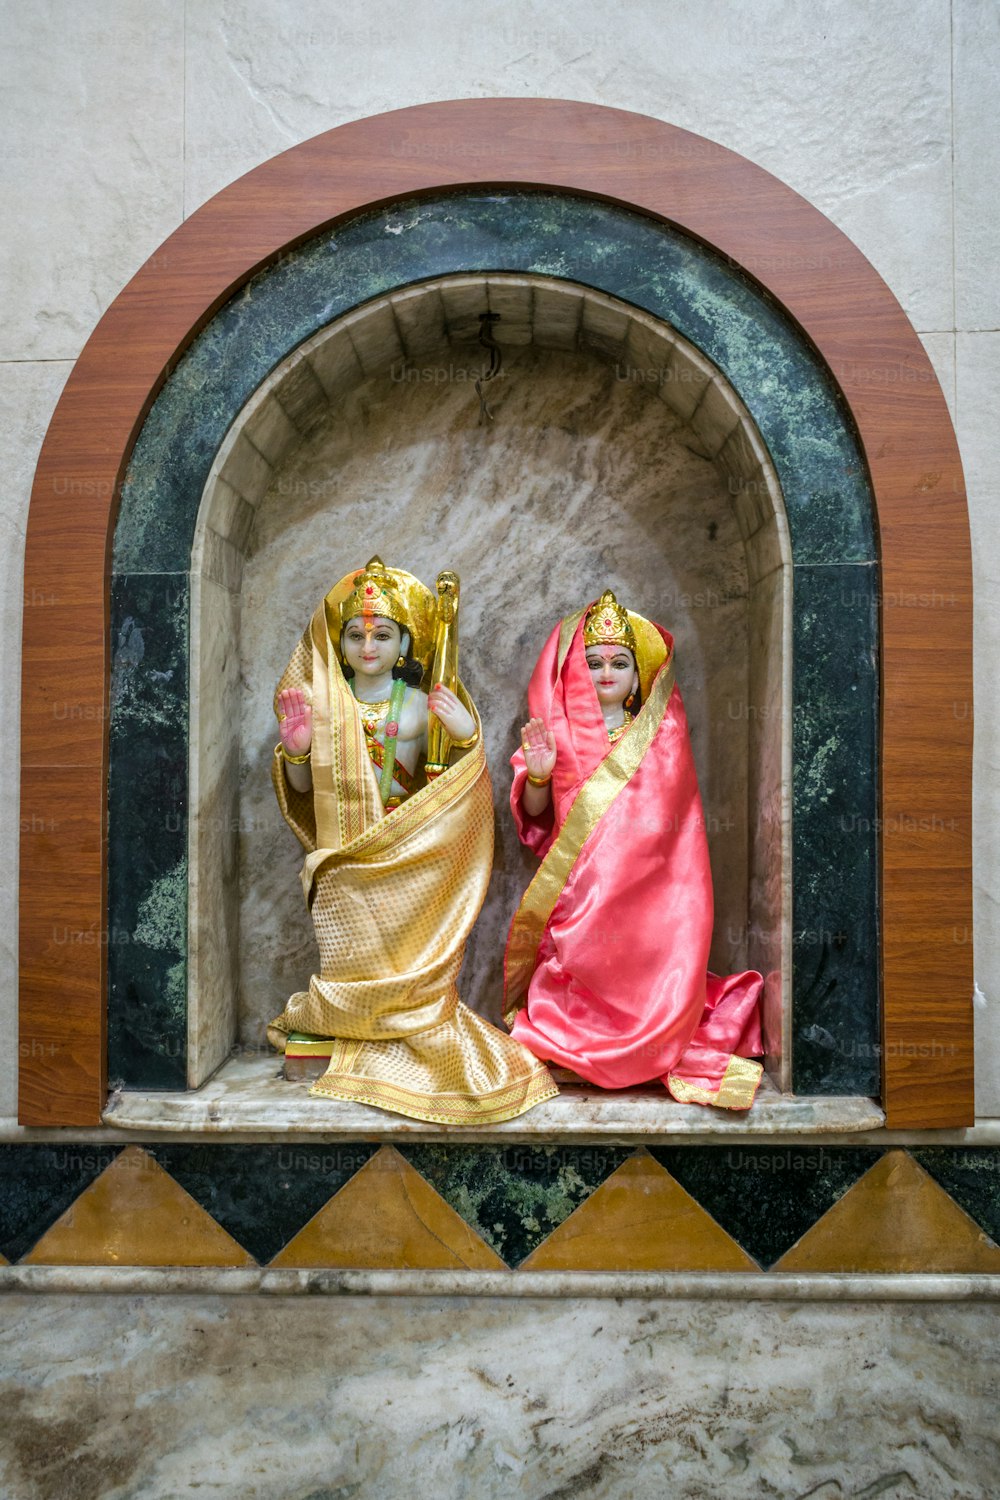 Una statua di due donne in una nicchia